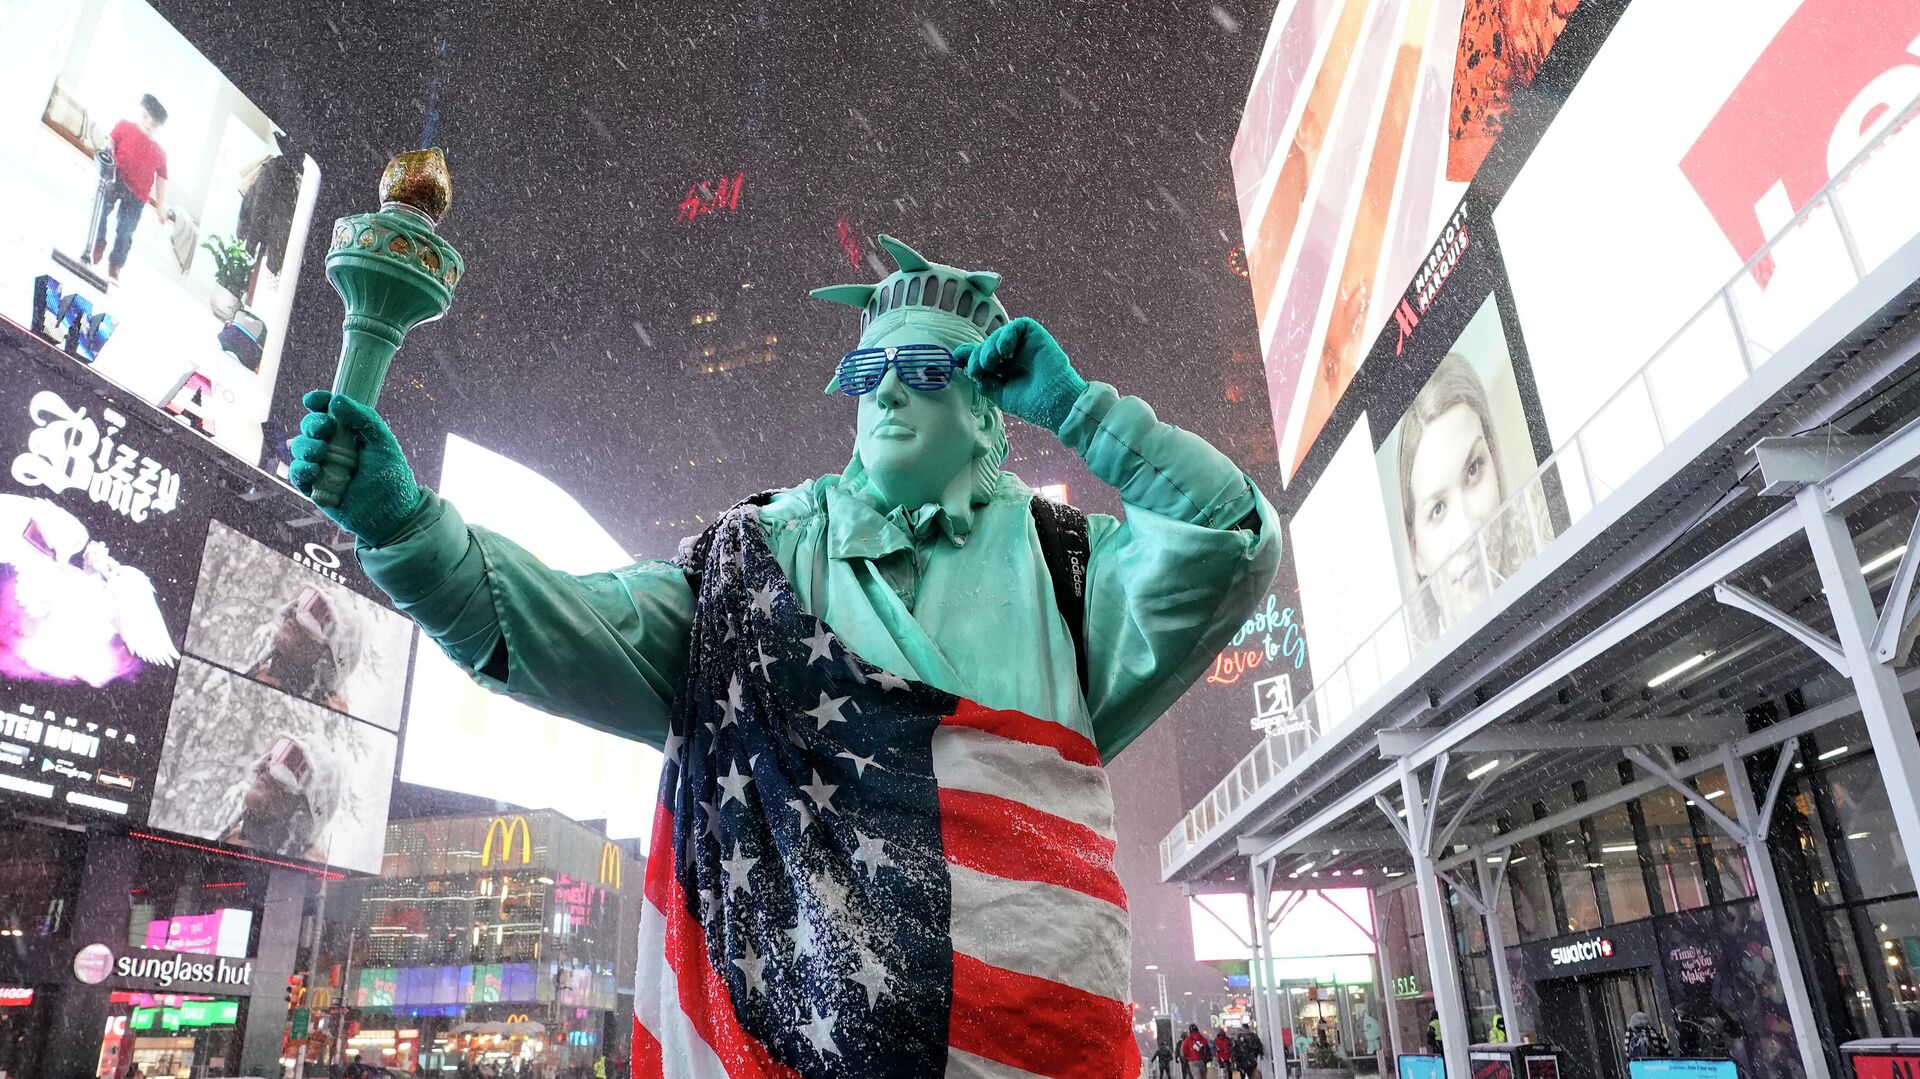 Человек в костюме Статуи Свободы на Таймс-сквер в Нью-Йорке, США  - РИА Новости, 1920, 05.03.2021